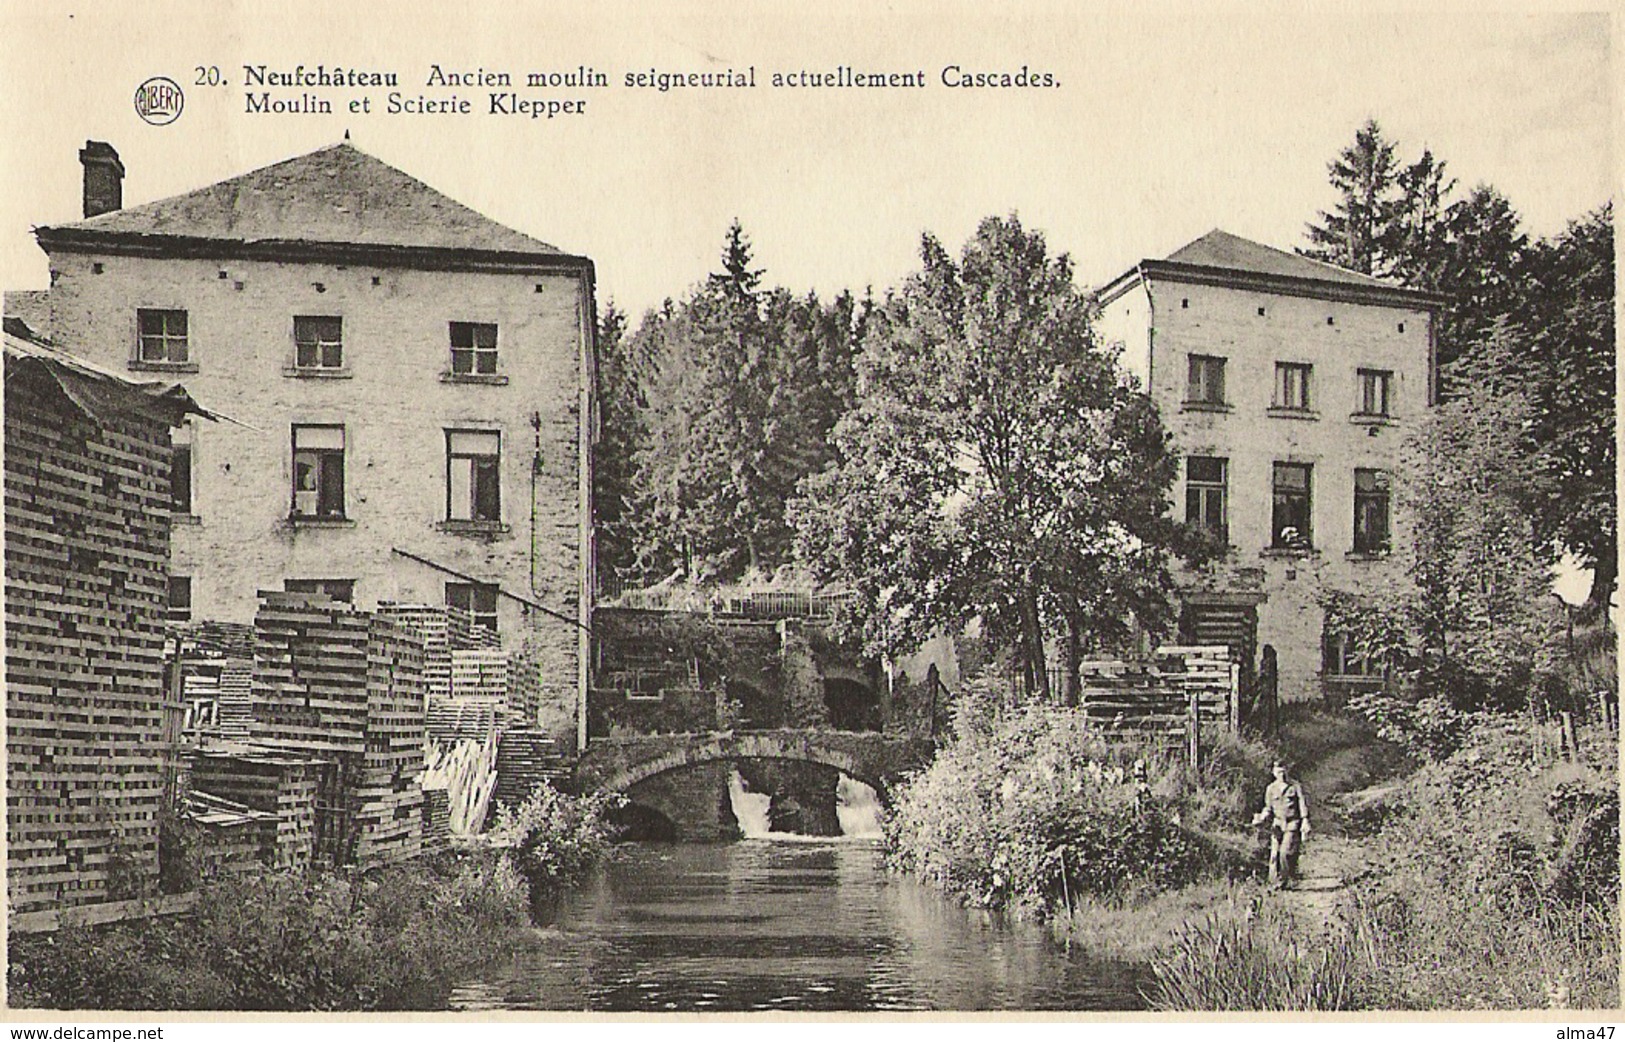 Neufchâteau - 20. Ancien Moulin Seigneurial Actuellement Cascades, Moulin Et Scierie Klepper - Circulé 1953 - Neufchâteau